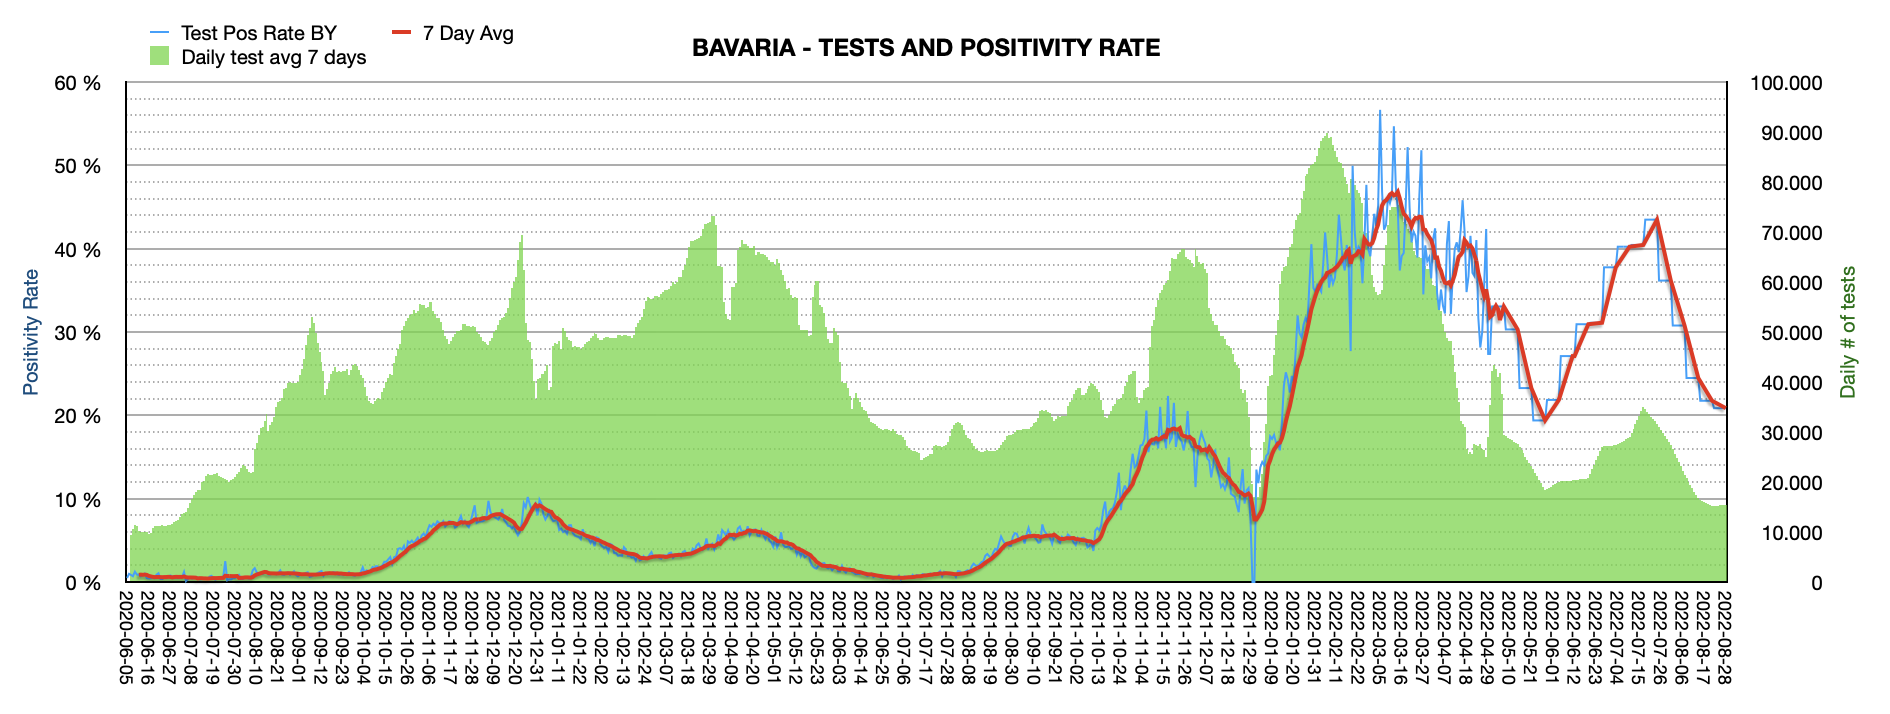 Grafik mit durchgeführten PCR Tests pro Tag in Bayern seit Juni 2020. Die Zahl der Tests pro Tag ist mit ca. 15.405 weiterhin niedrig und weit vom Maximum von ca. 100.000 Tests/Tag entfernt. Die Positivrate sinkt weiter auf jetzt 20,87%.